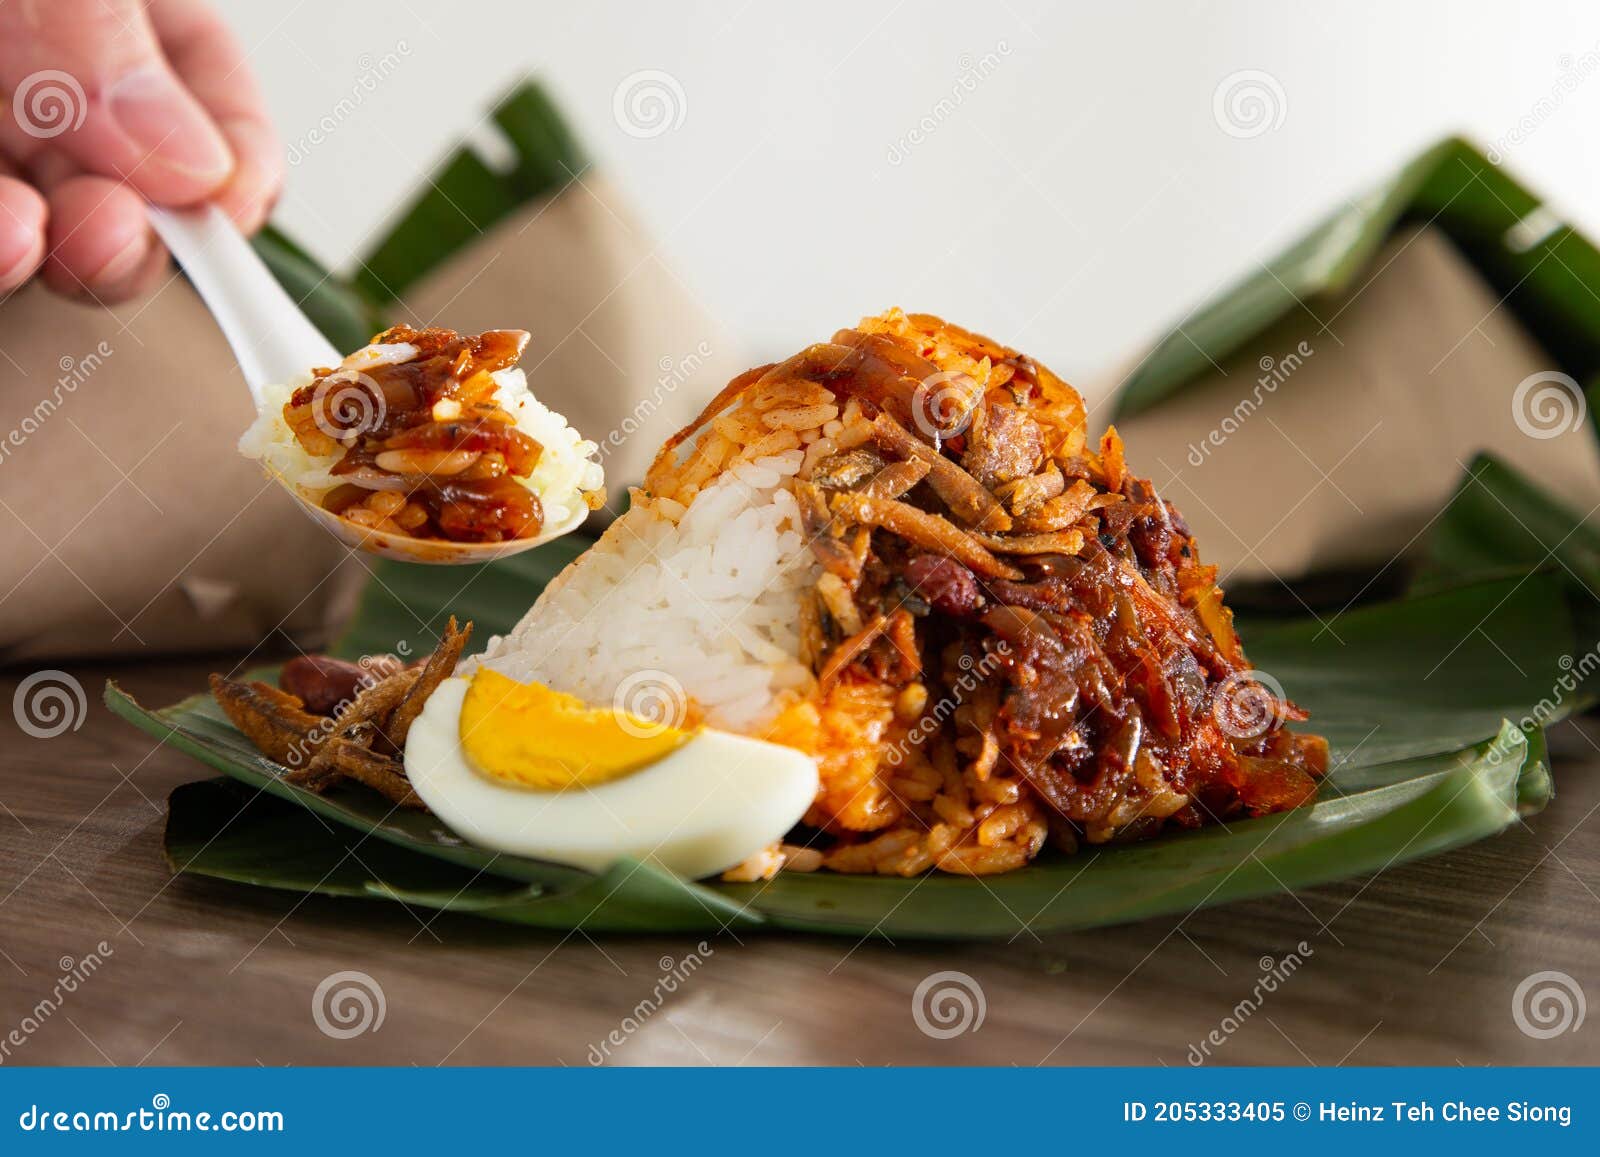 马来西亚人最爱吃的早餐排行榜！你的最爱有没有上榜？ - Leesharing